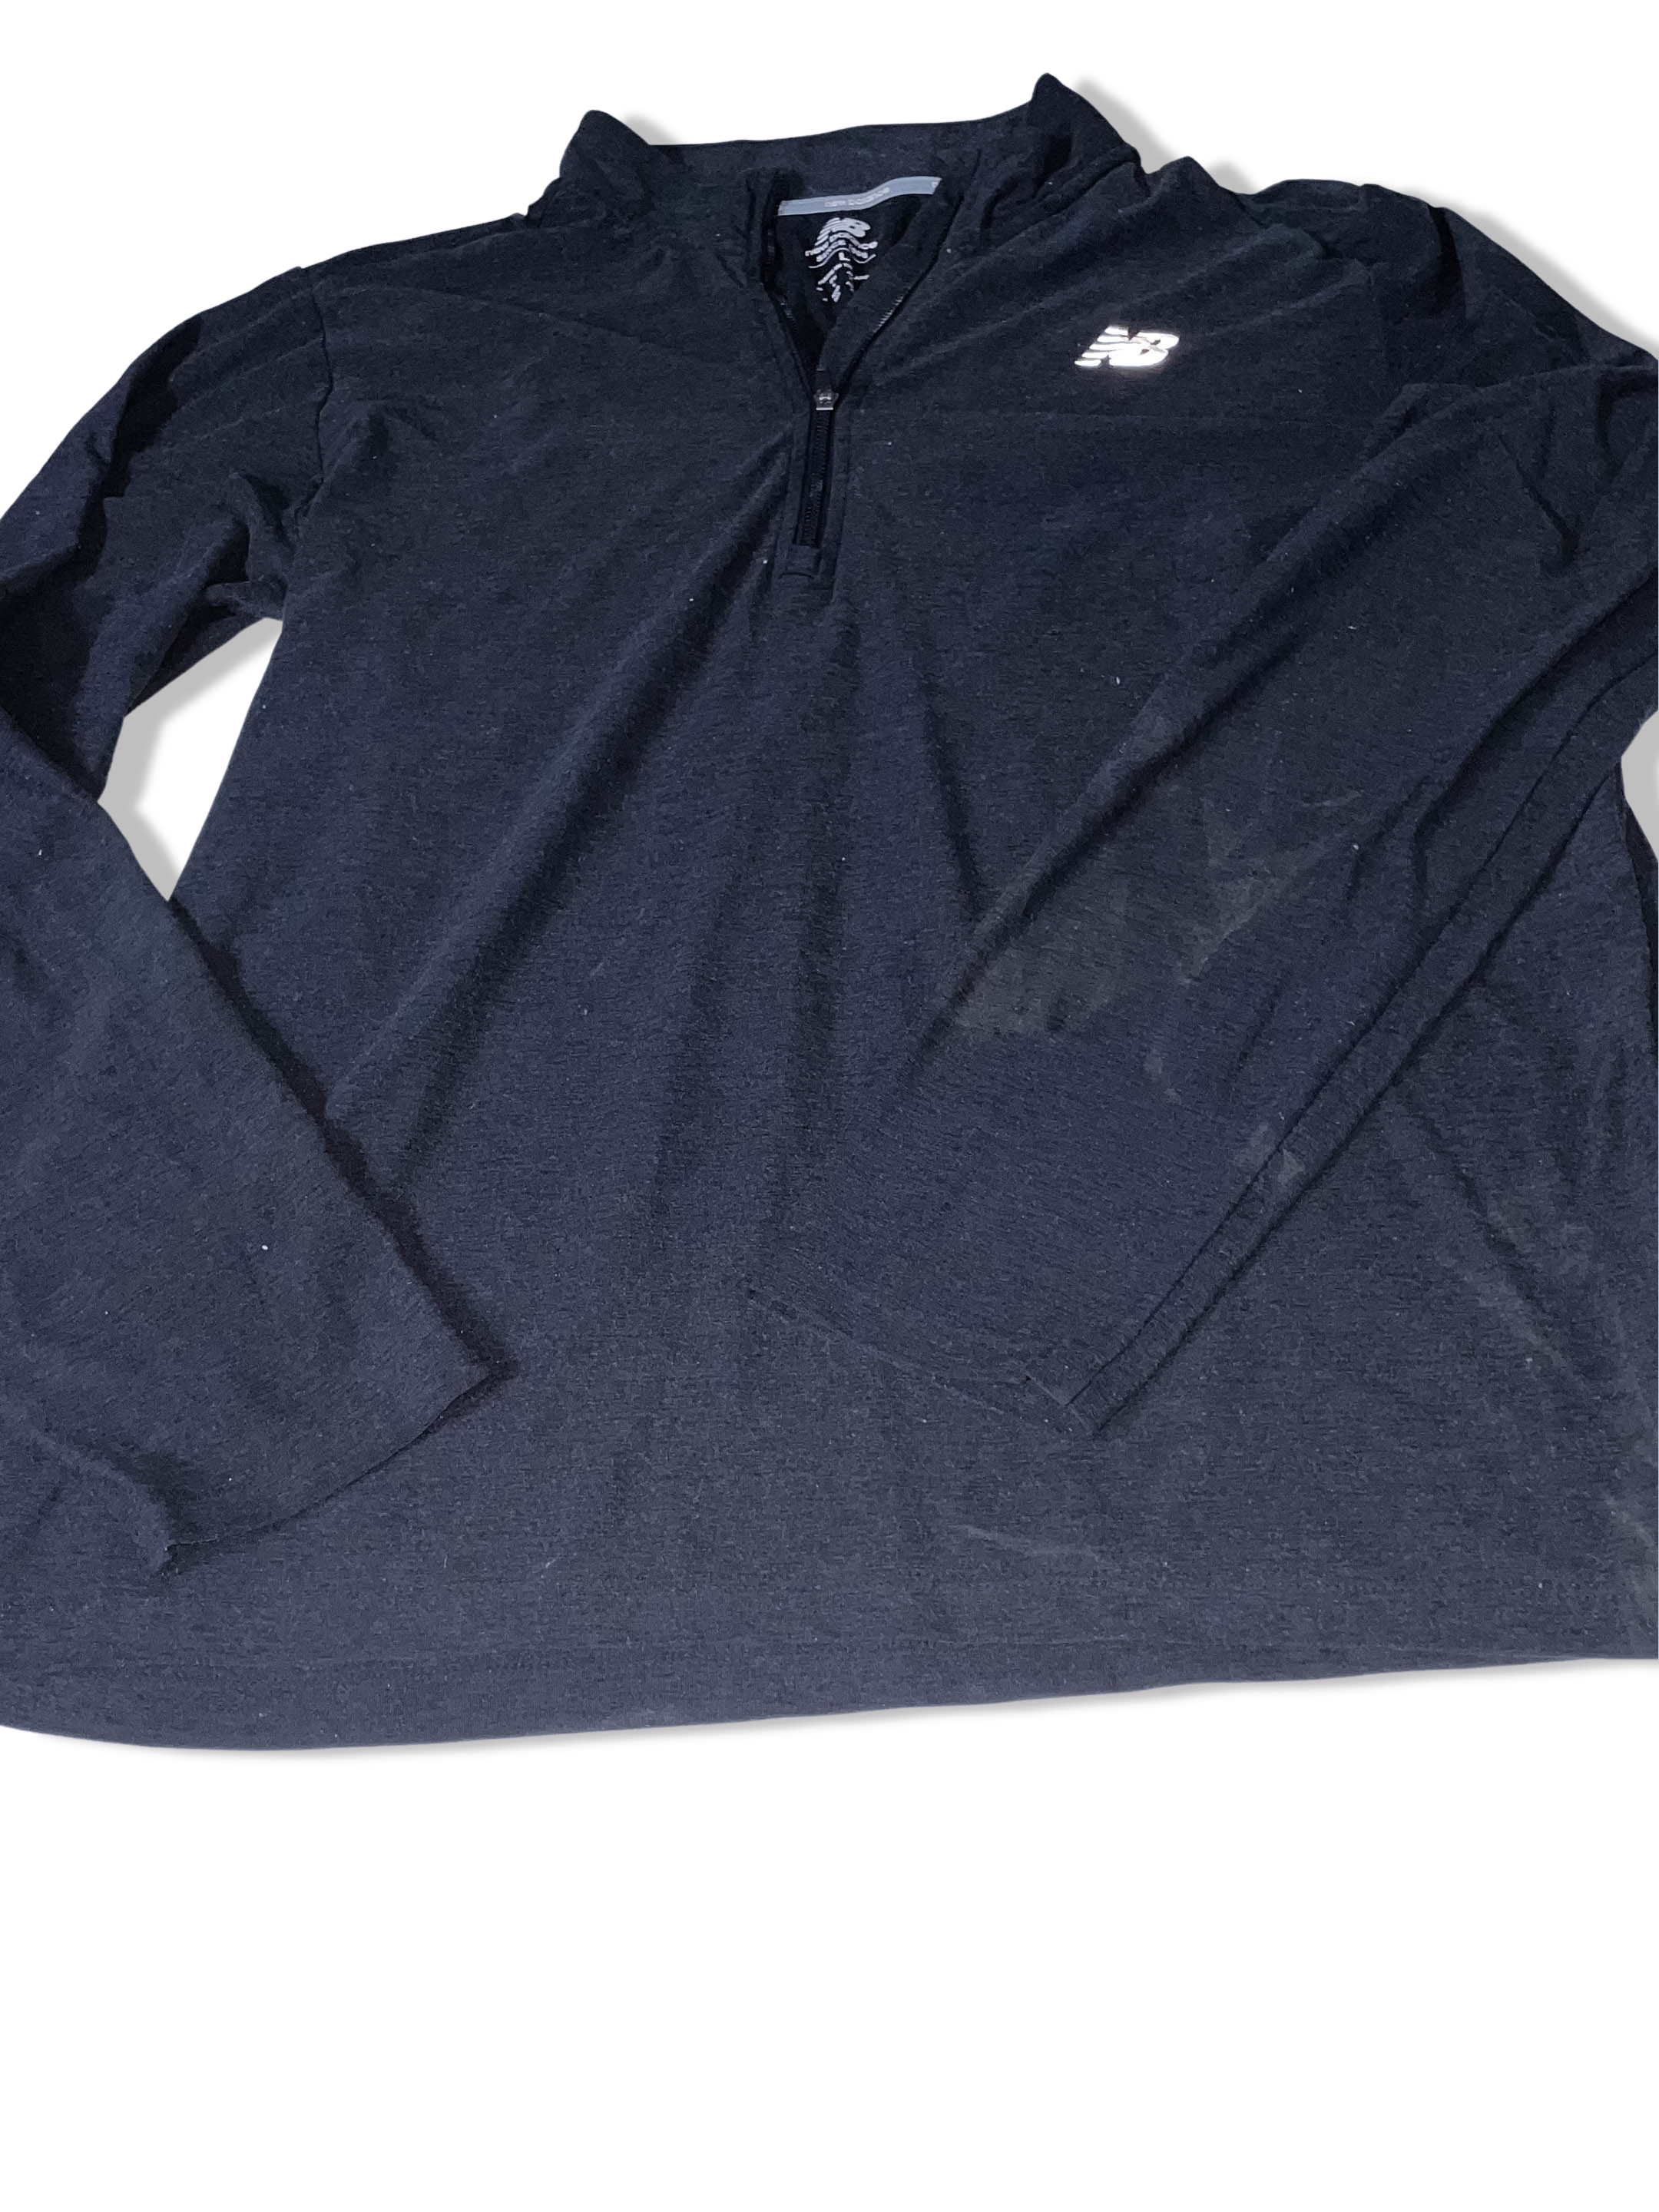 Vintage Black New Balance Fleece 1/4 zip up long sleeve large sweatshirt